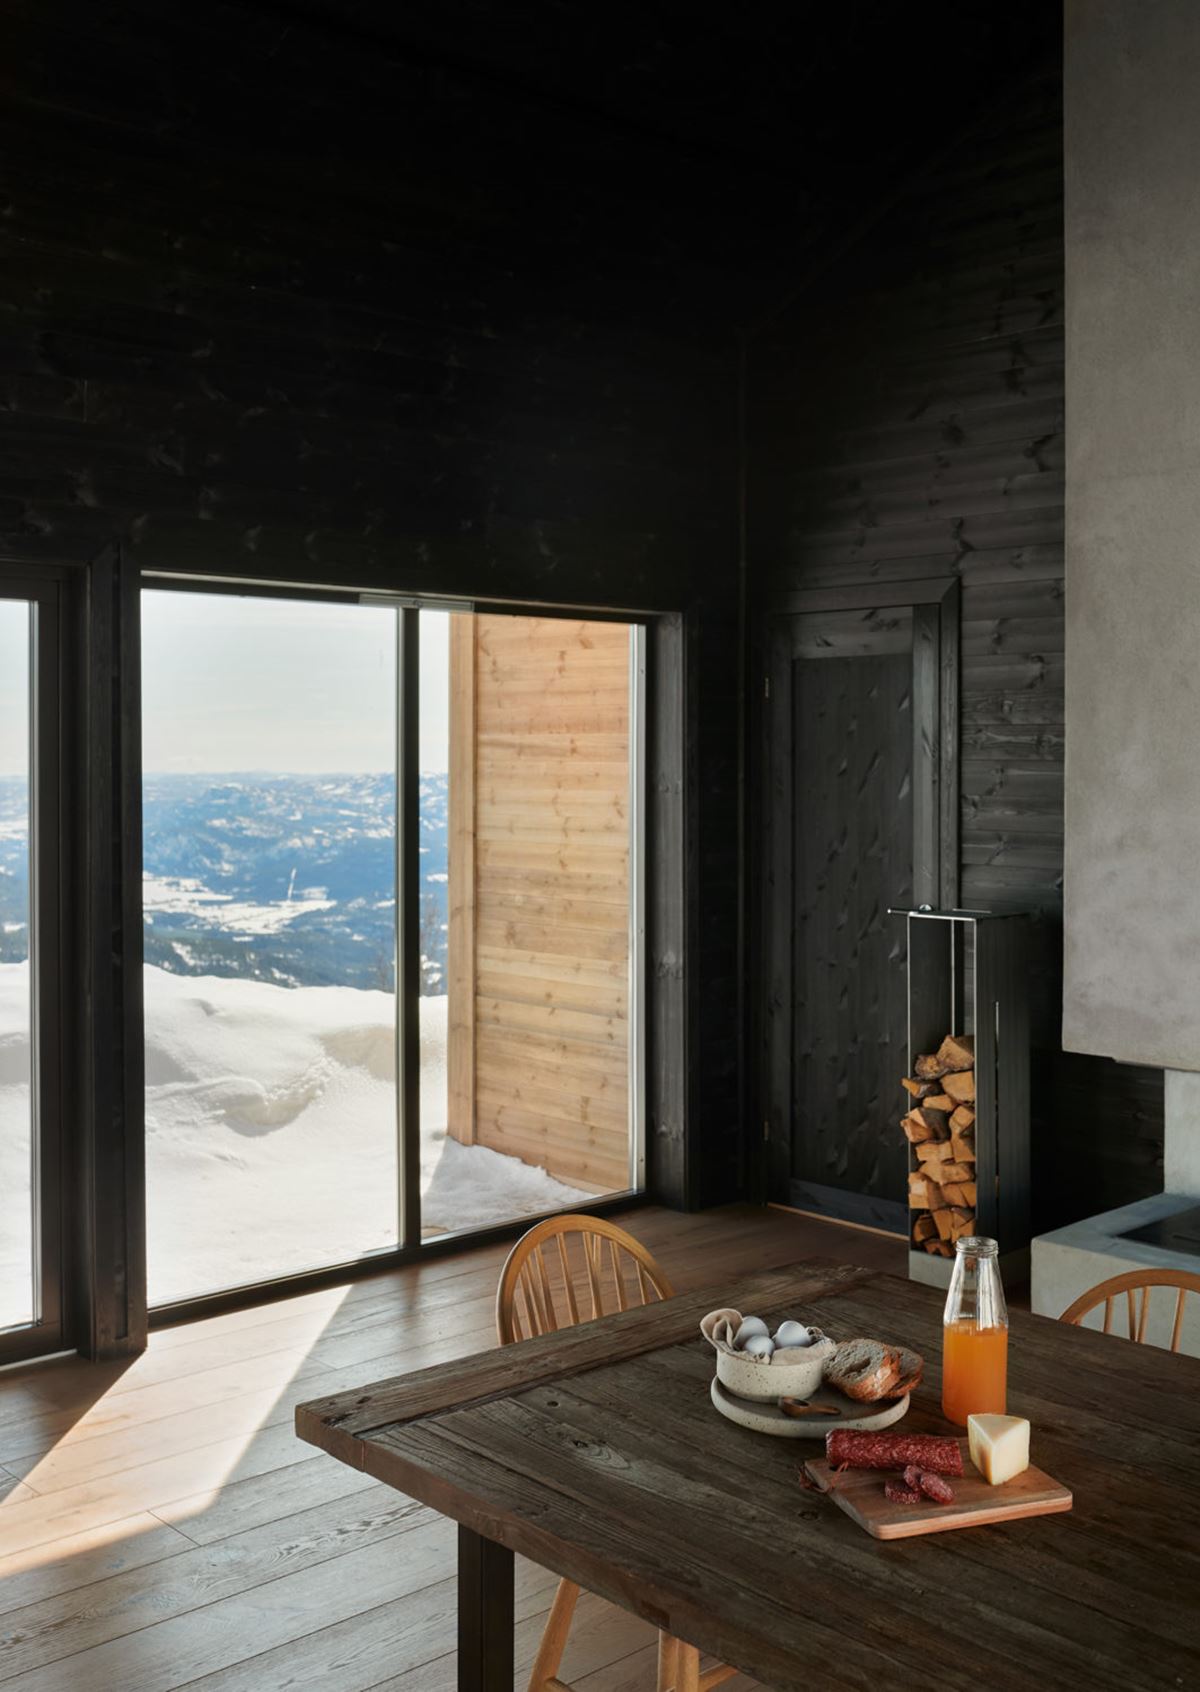 På et mørkt trebord står juice og frokostvarer. I bakgrunnen skimtes en utsikt over daler, fjell og snødekt natur.